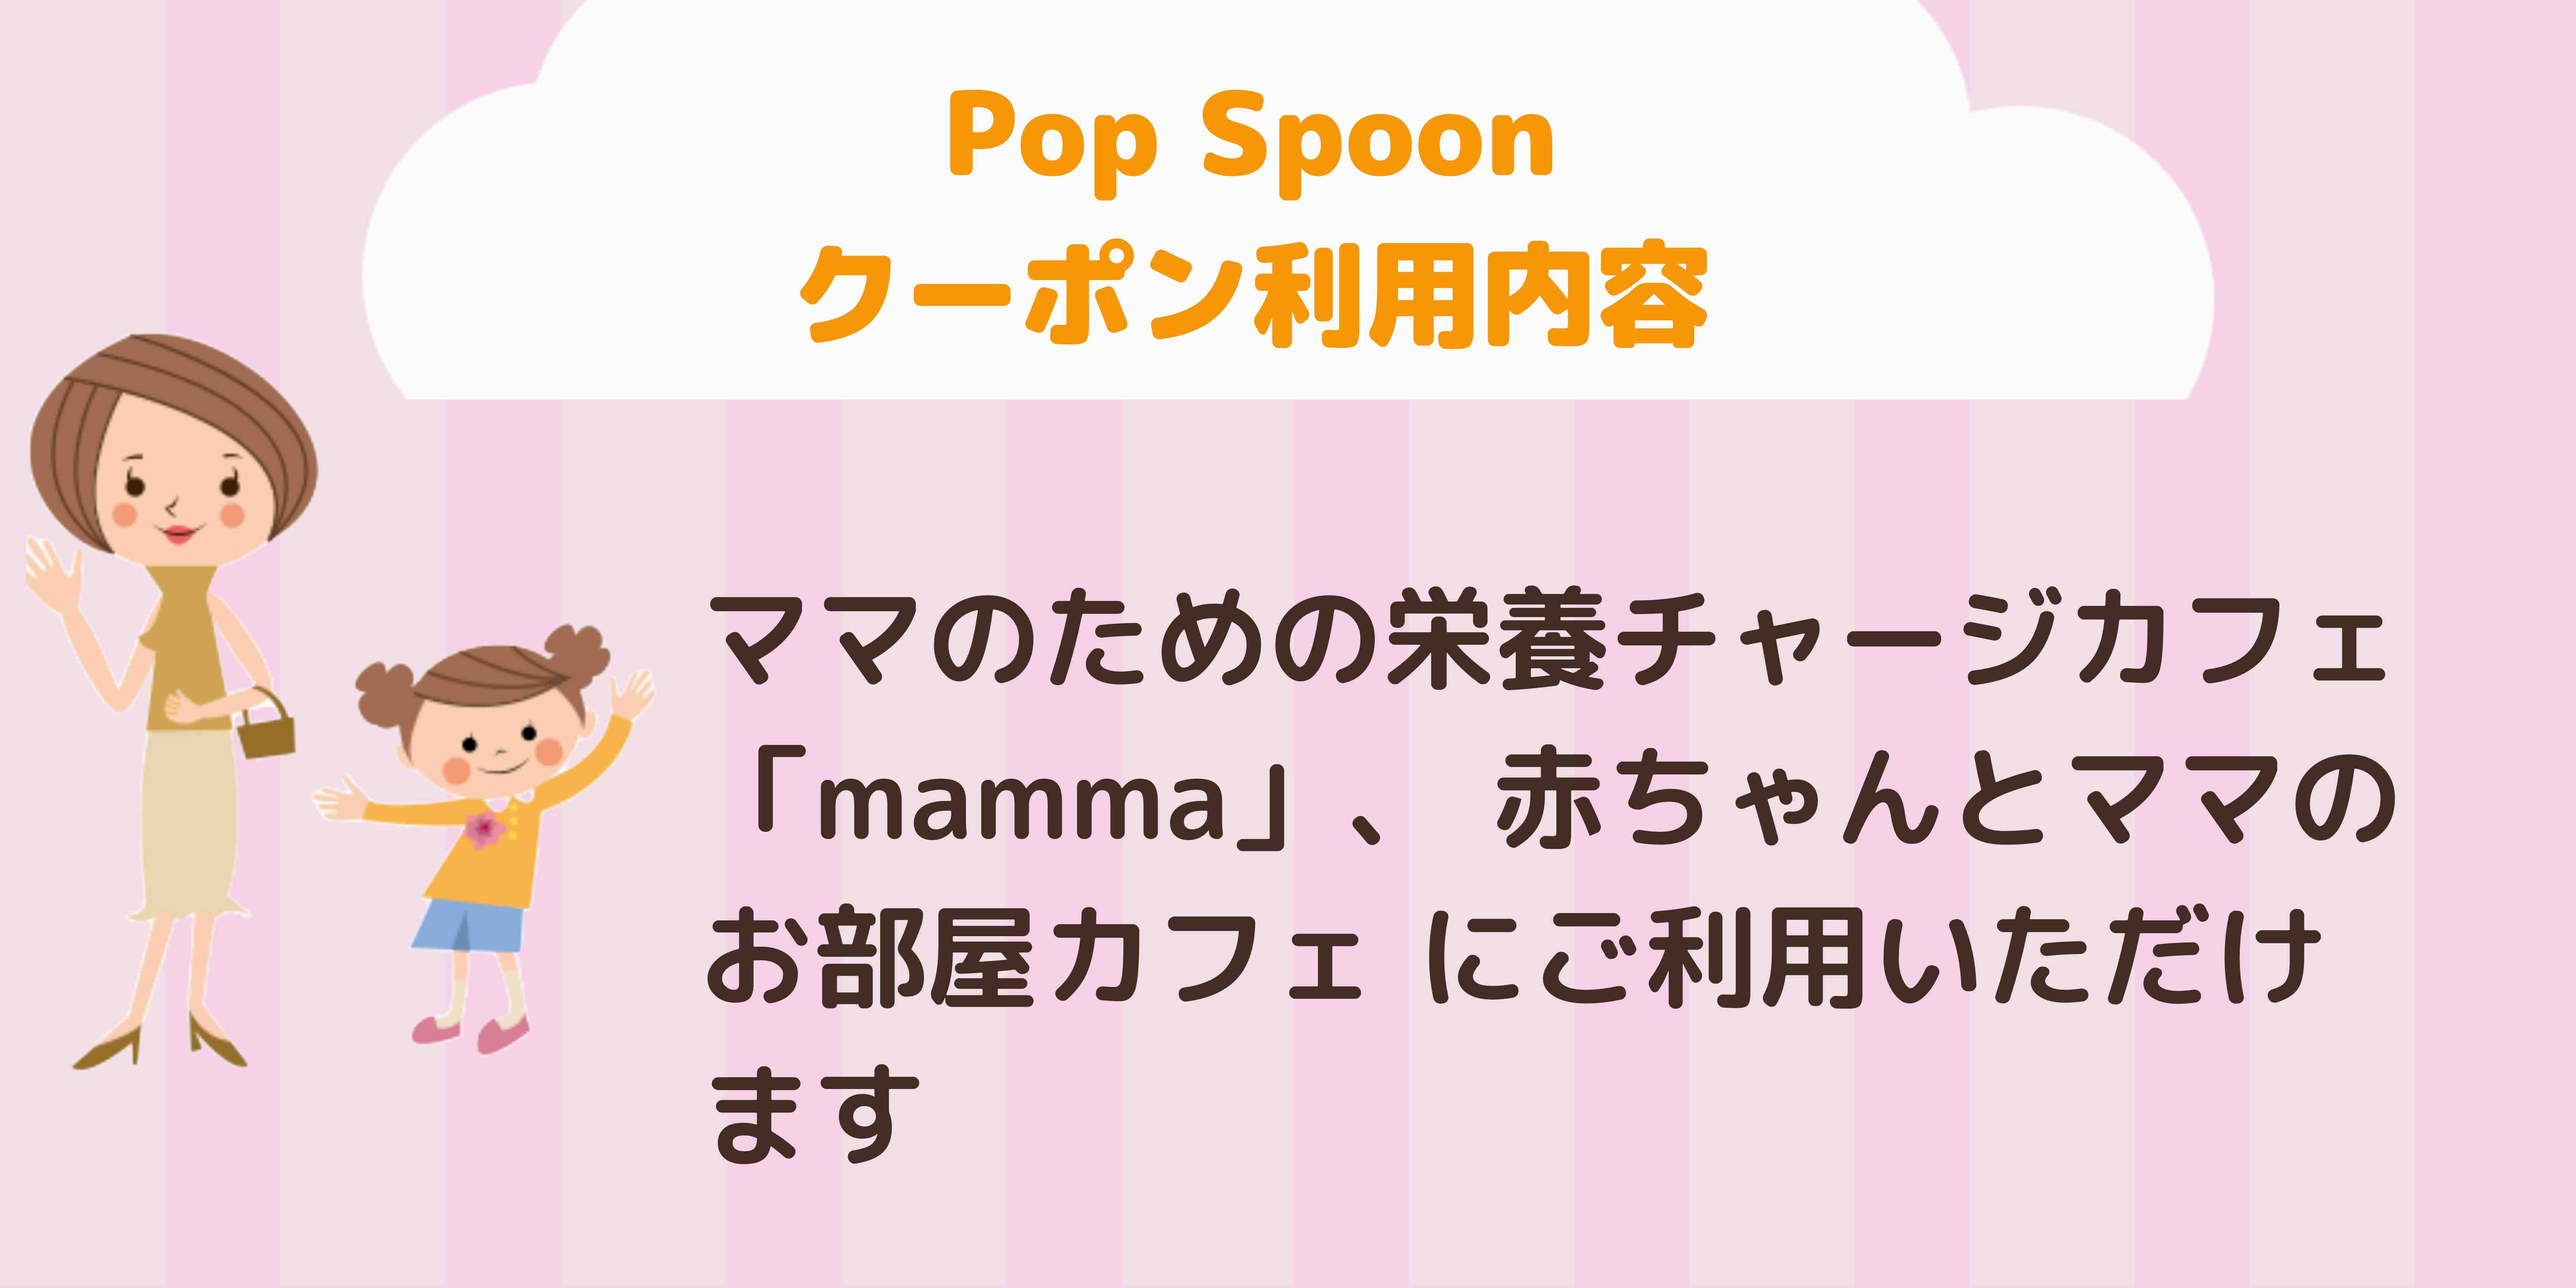 Pop Spoon